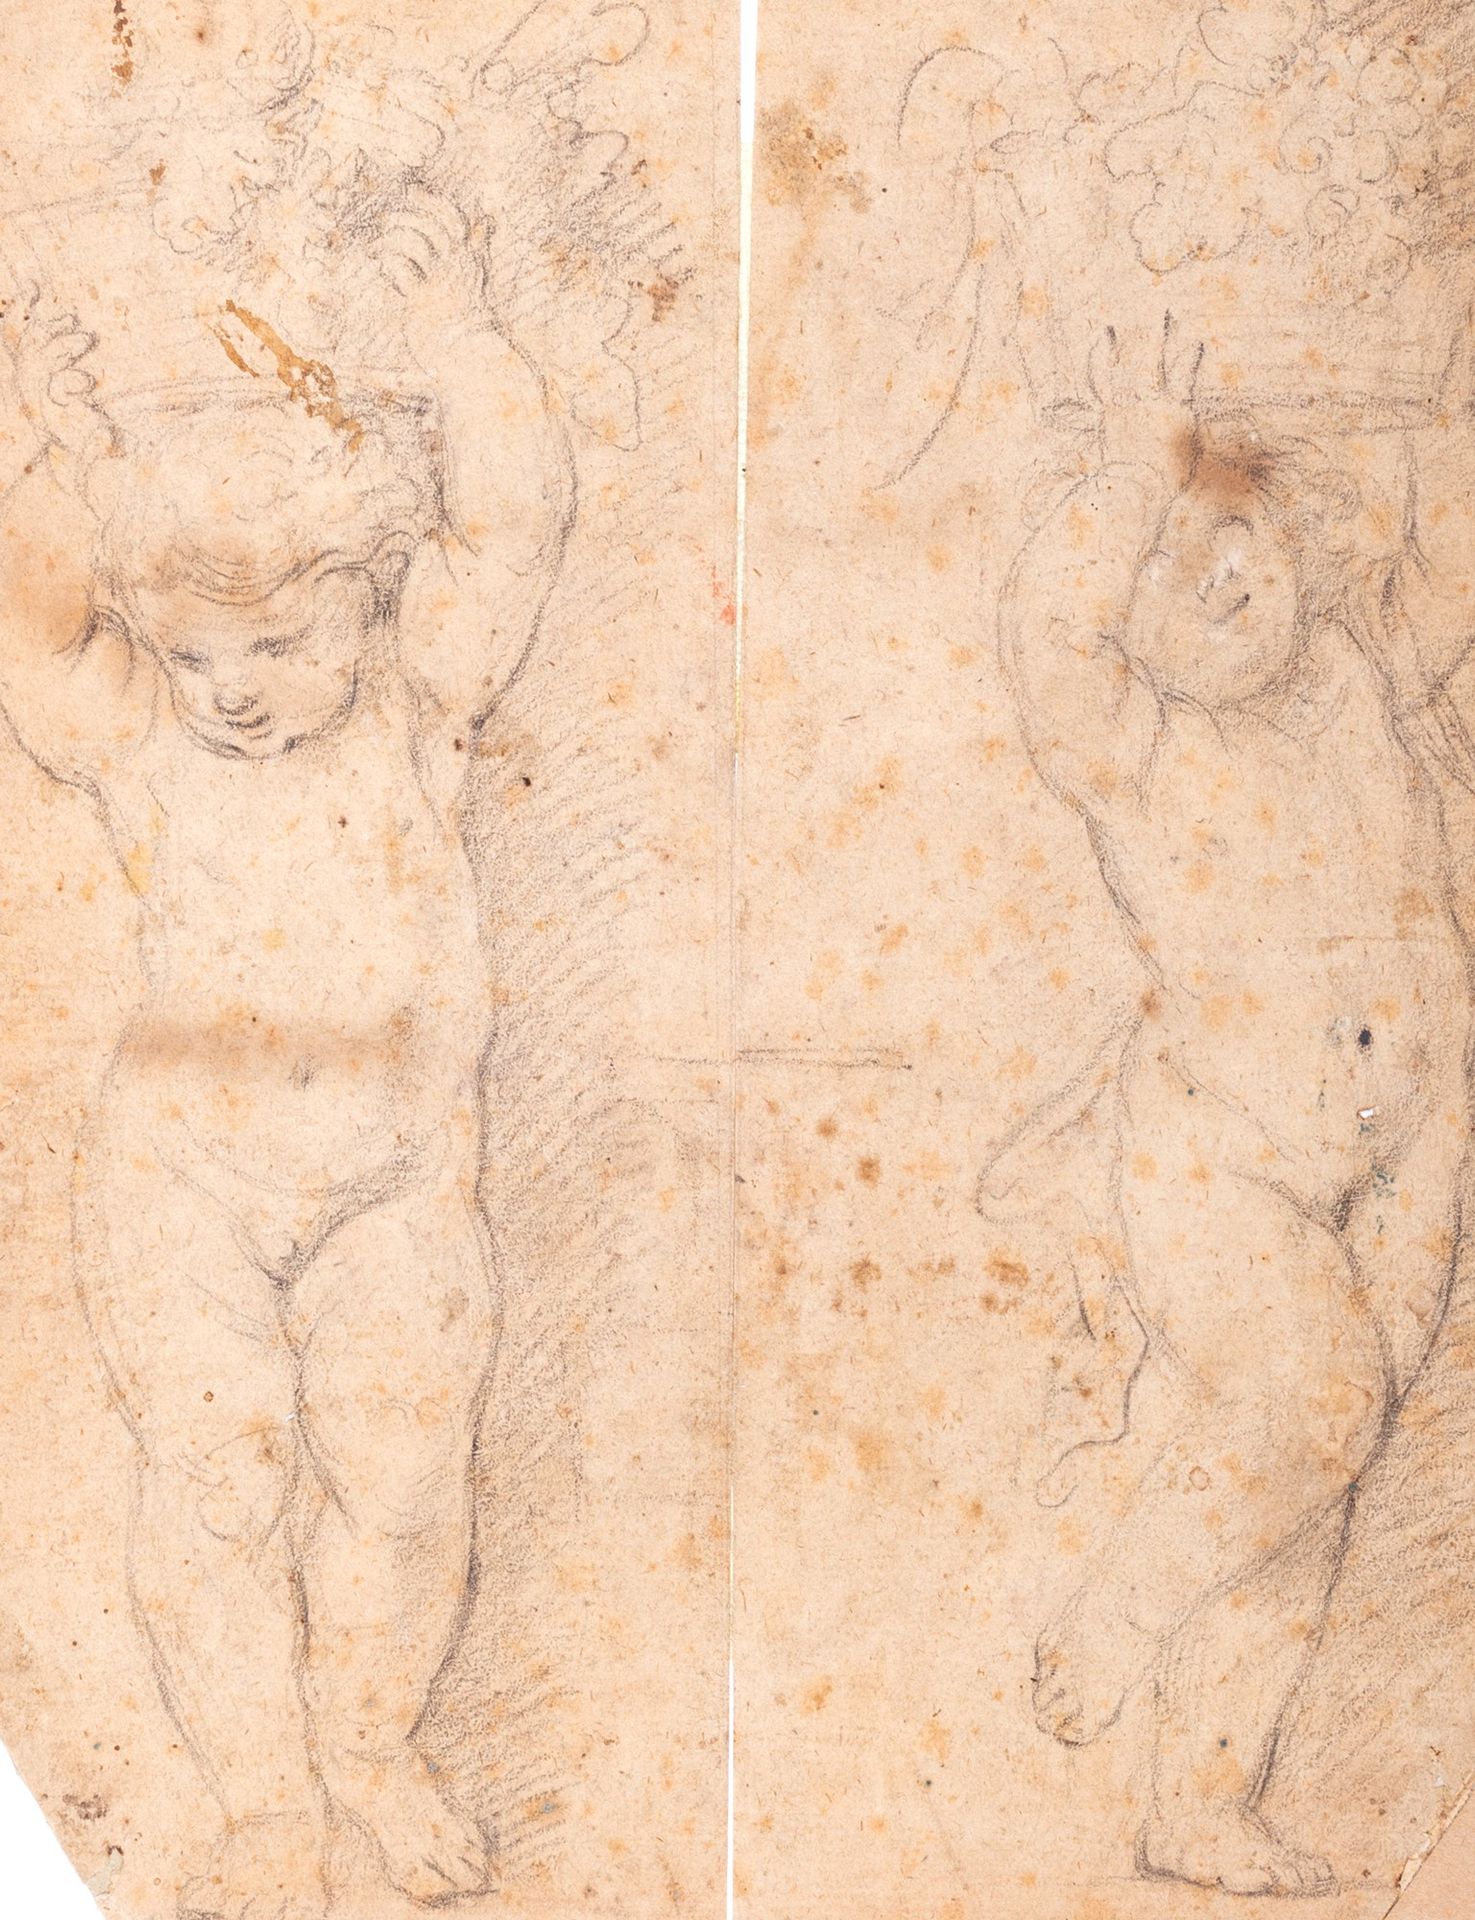 Sebastiano Conca 两个小天使的研究，他们的头上有花篮和水果

棕色纸上的黑色铅笔
249 x 95 mm
物品来源

 

Giancarlo &hellip;